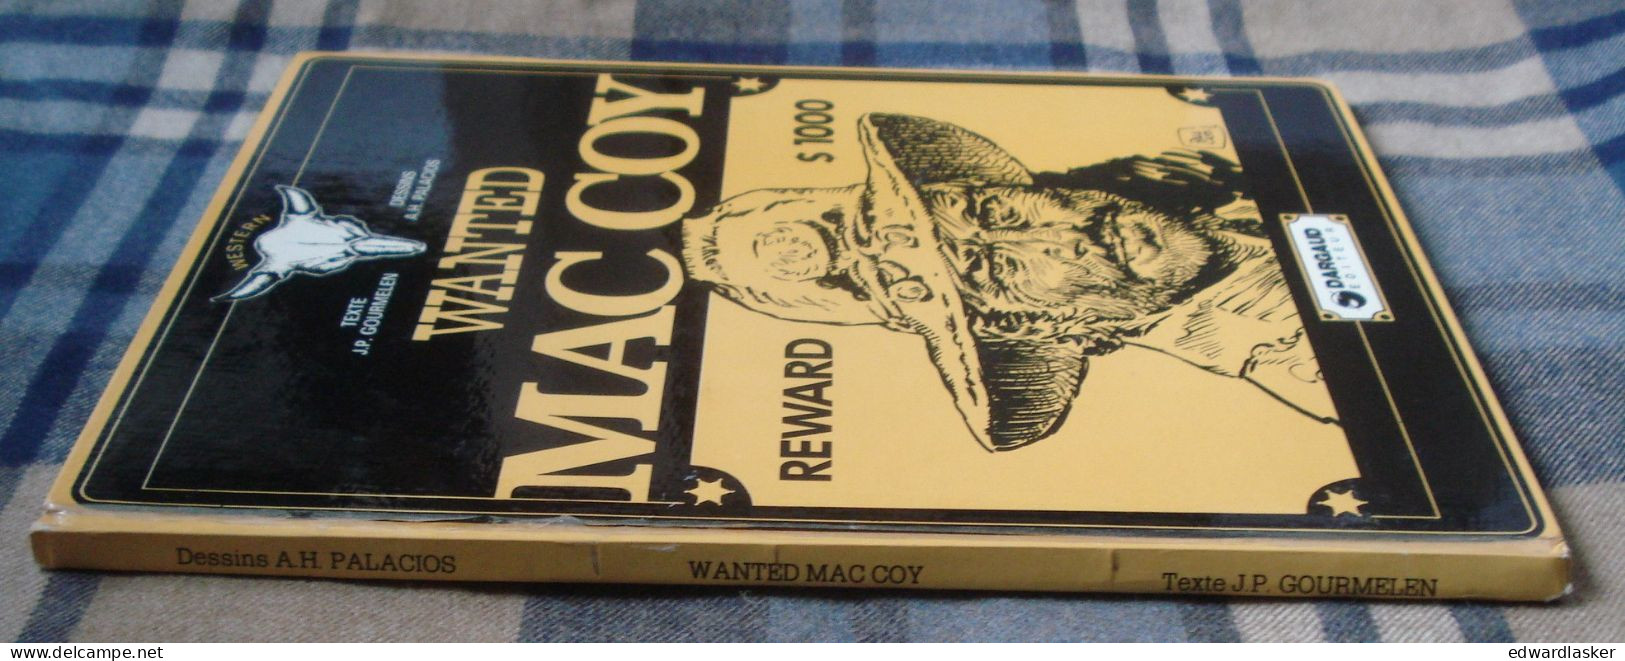 MAC COY 5 : Wanted Mac Coy - EO Dargaud 1977 - bon état - Gourmelen Palacios